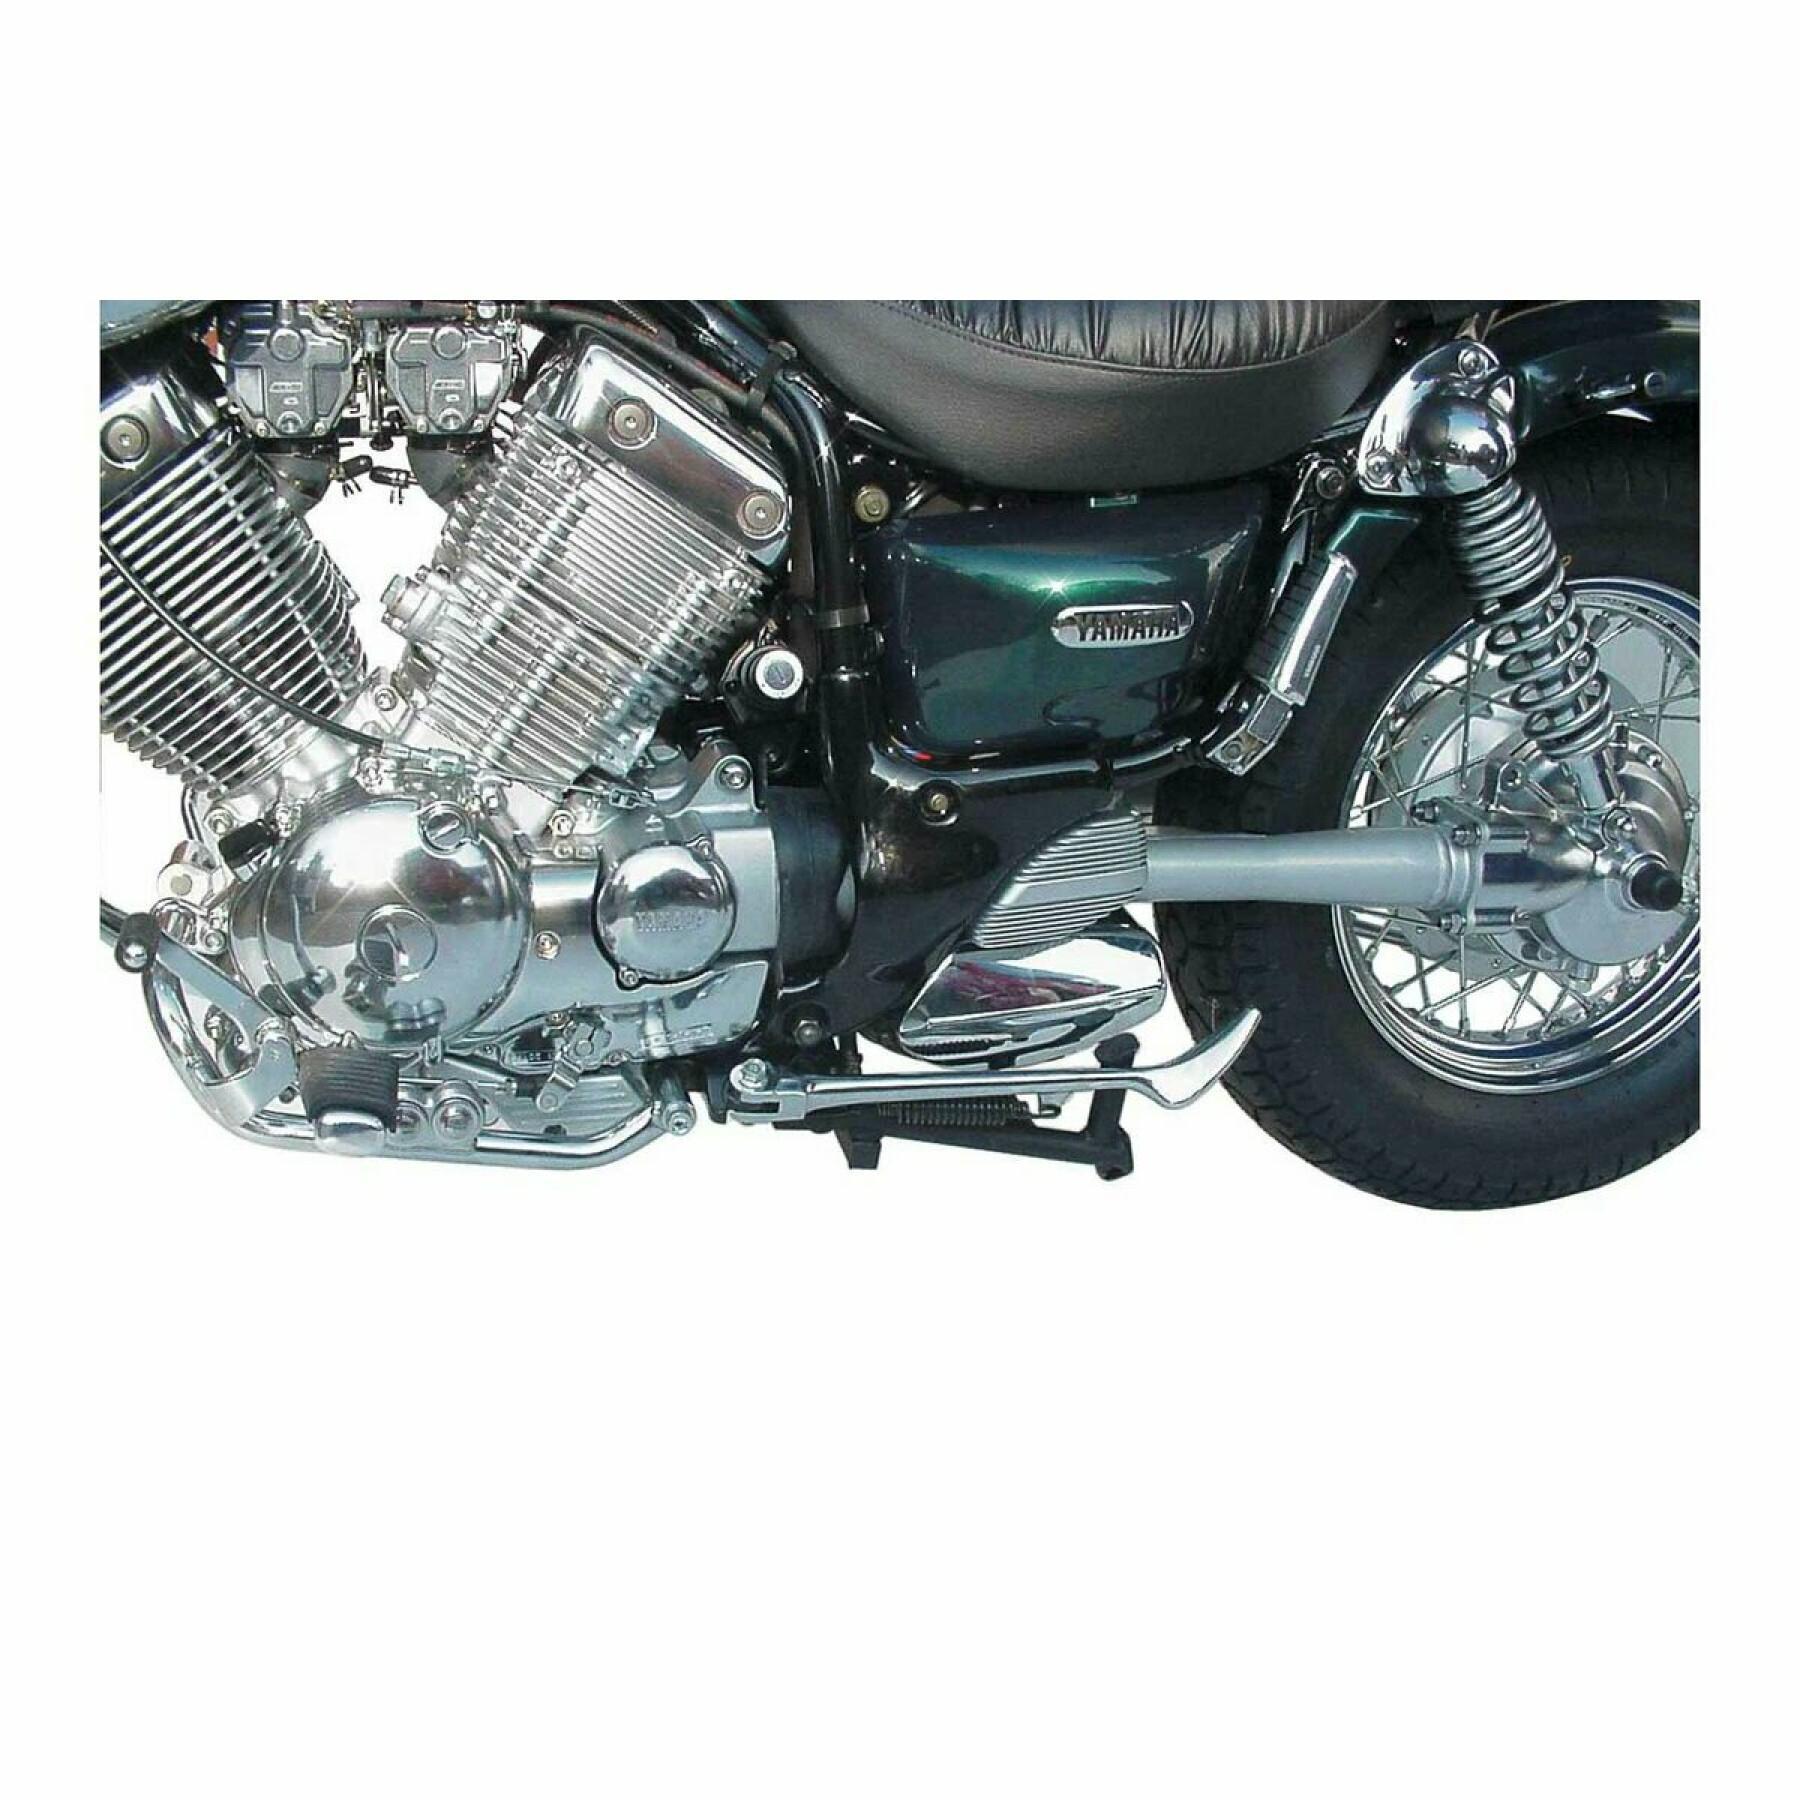 Caballete central de moto SW-Motech Yamaha XV 535 Virago (87-98)